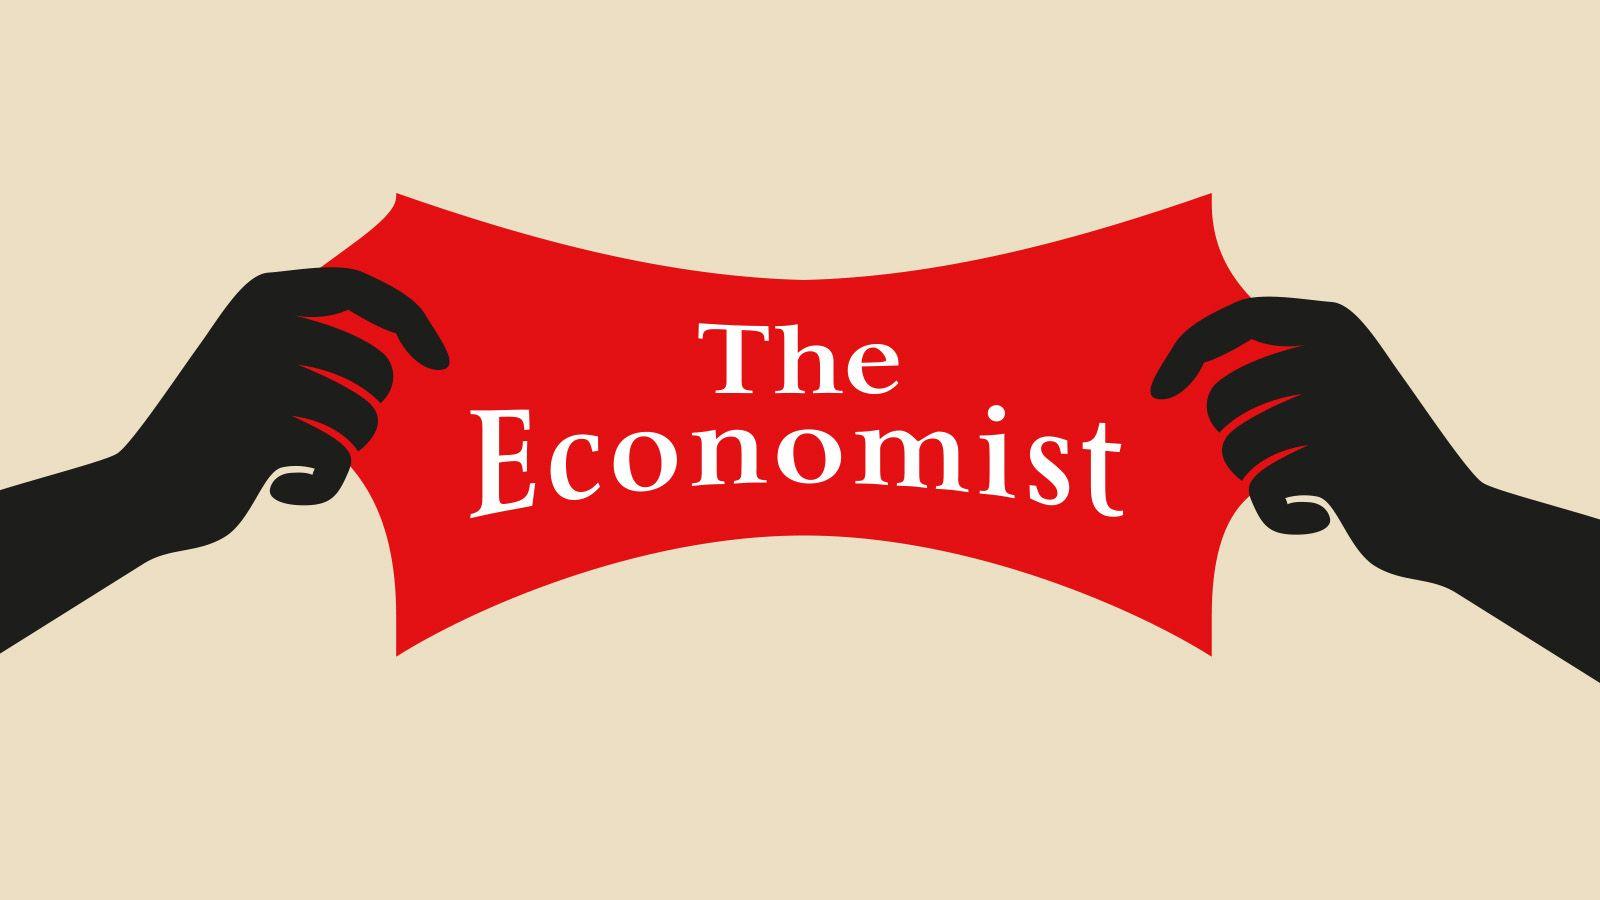 Economist Logo - Is The Economist left- or right-wing? - The Economist explains itself